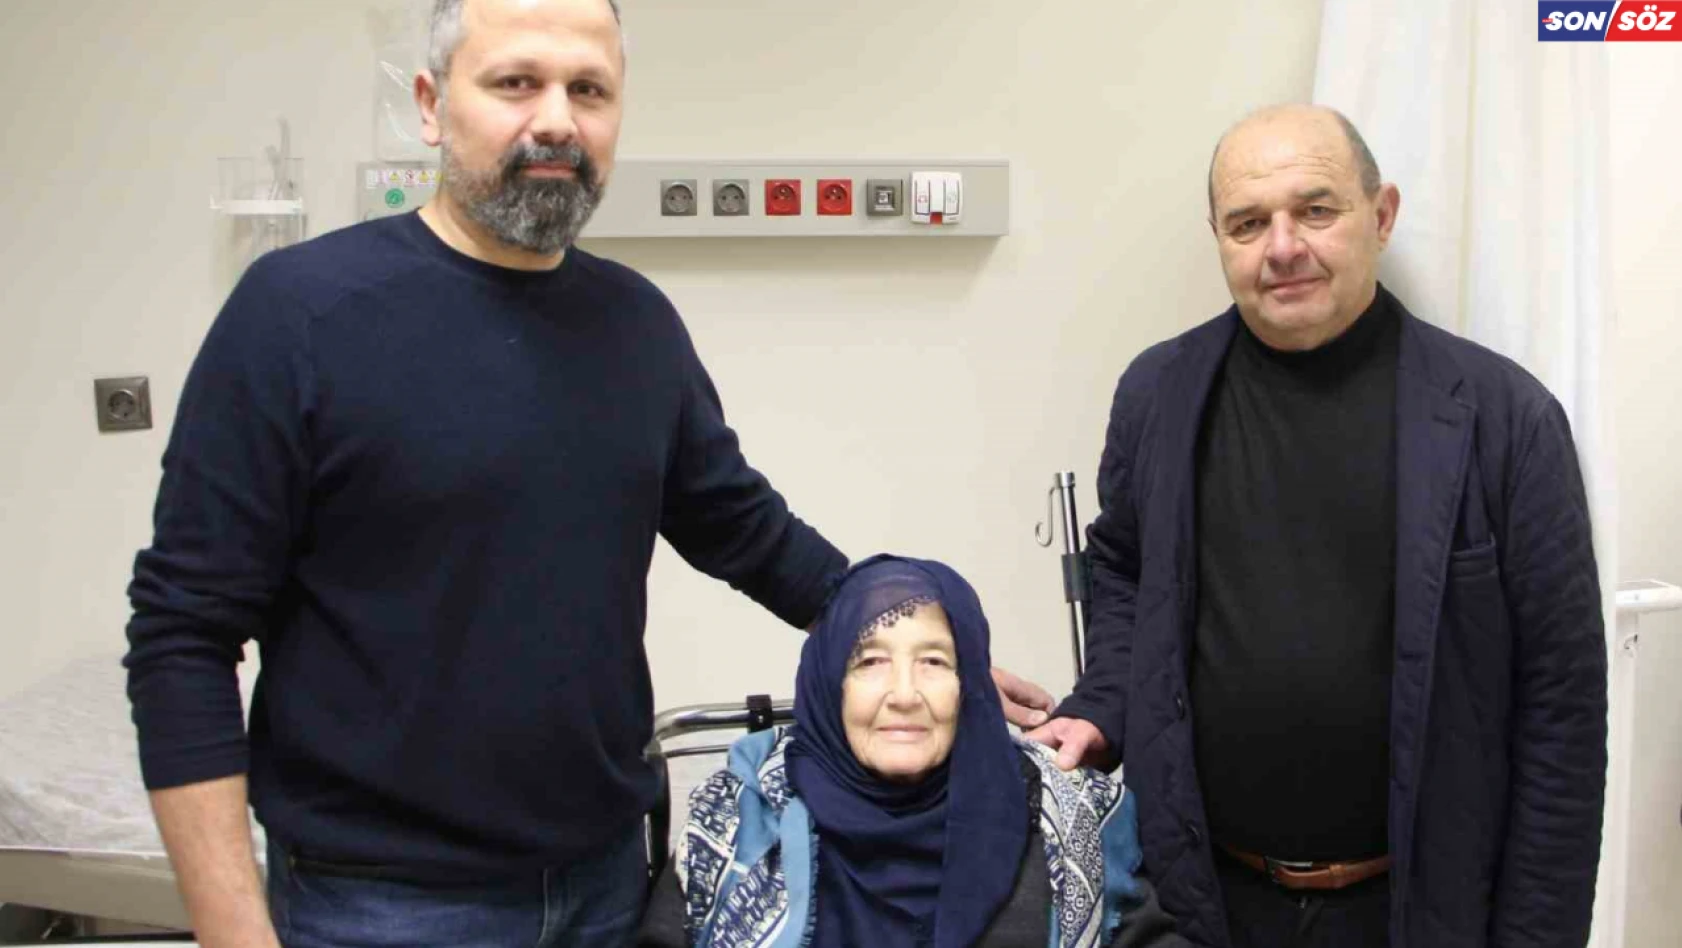 Kemoterapi ve ameliyattan korkan kadın, yapılan operasyon ile sağlığına kavuştu